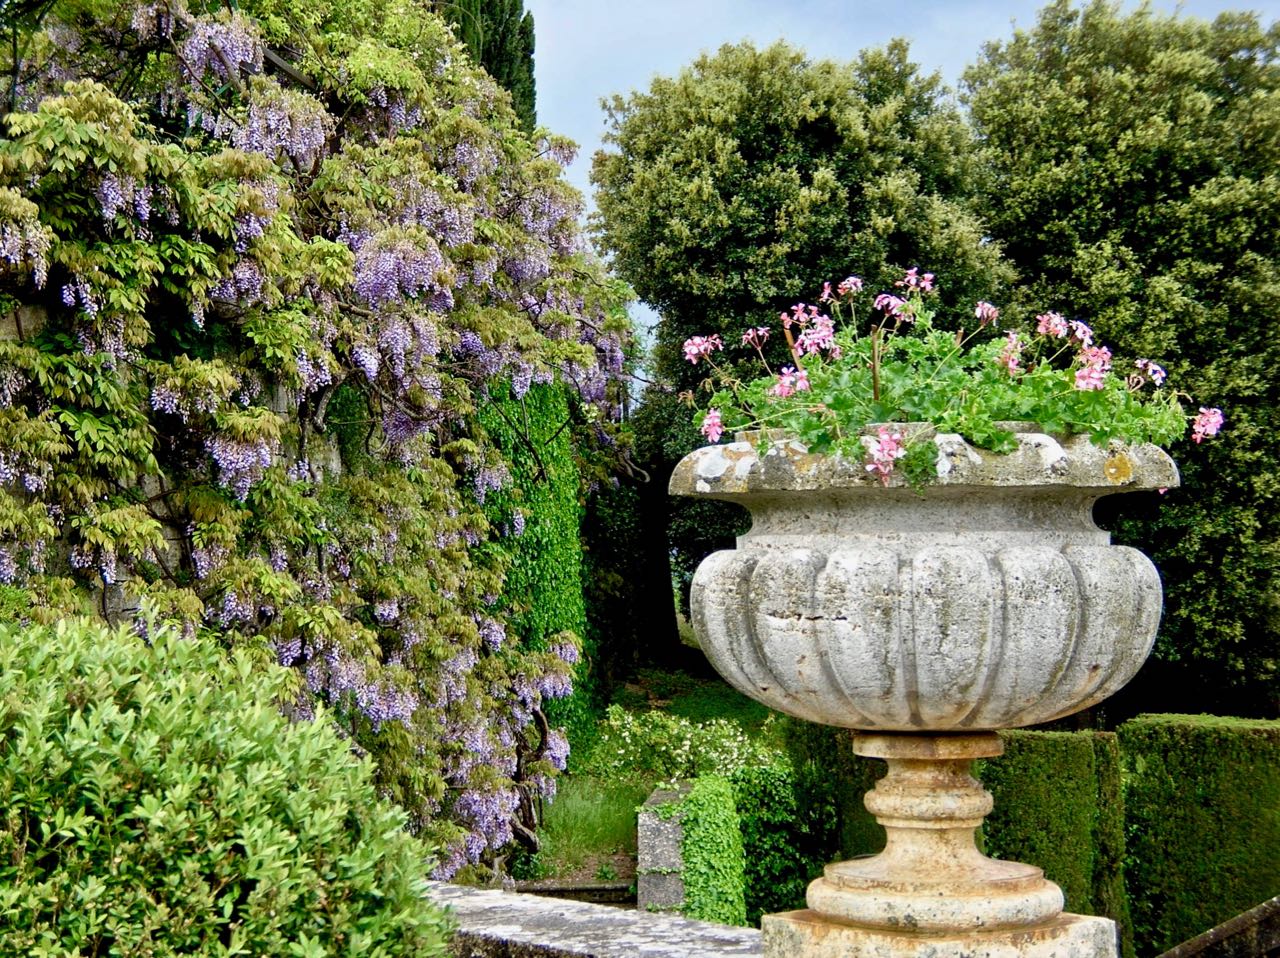 La Foce garden in Tuscany